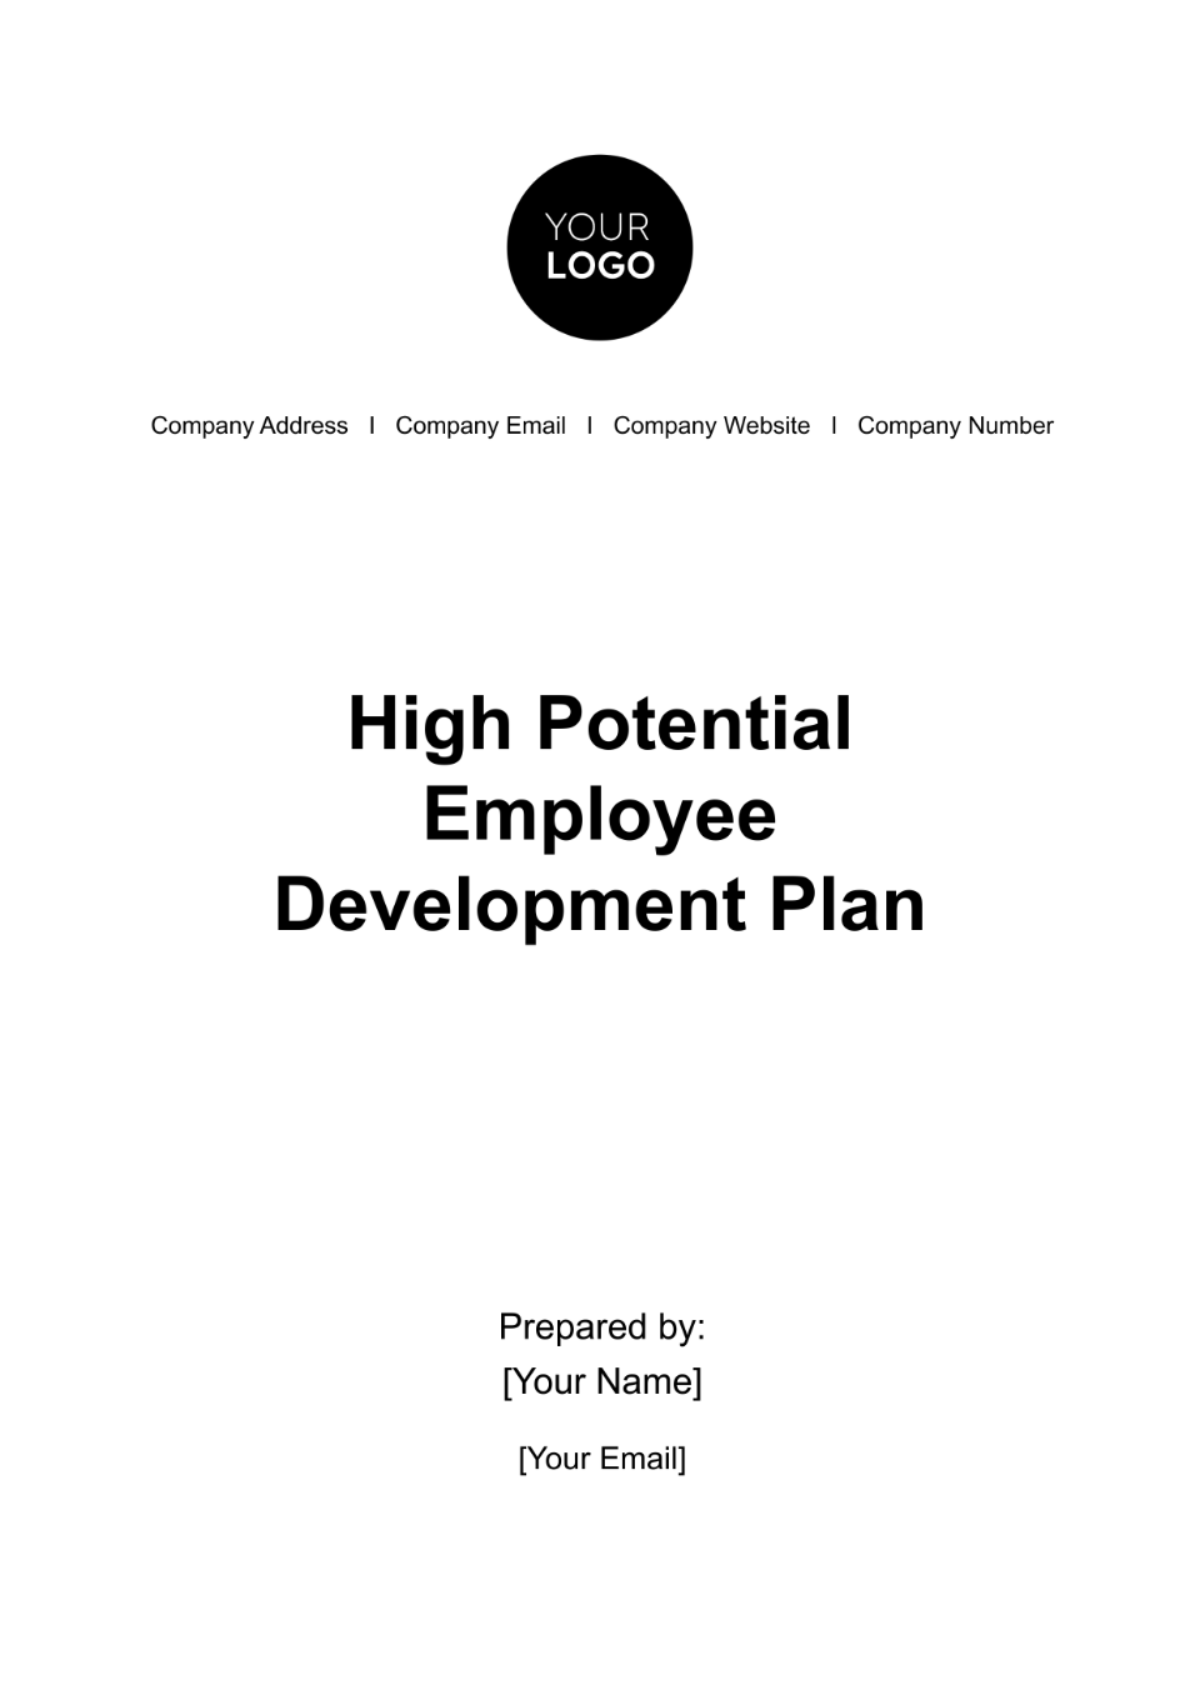 High Potential Employee Development Plan HR Template